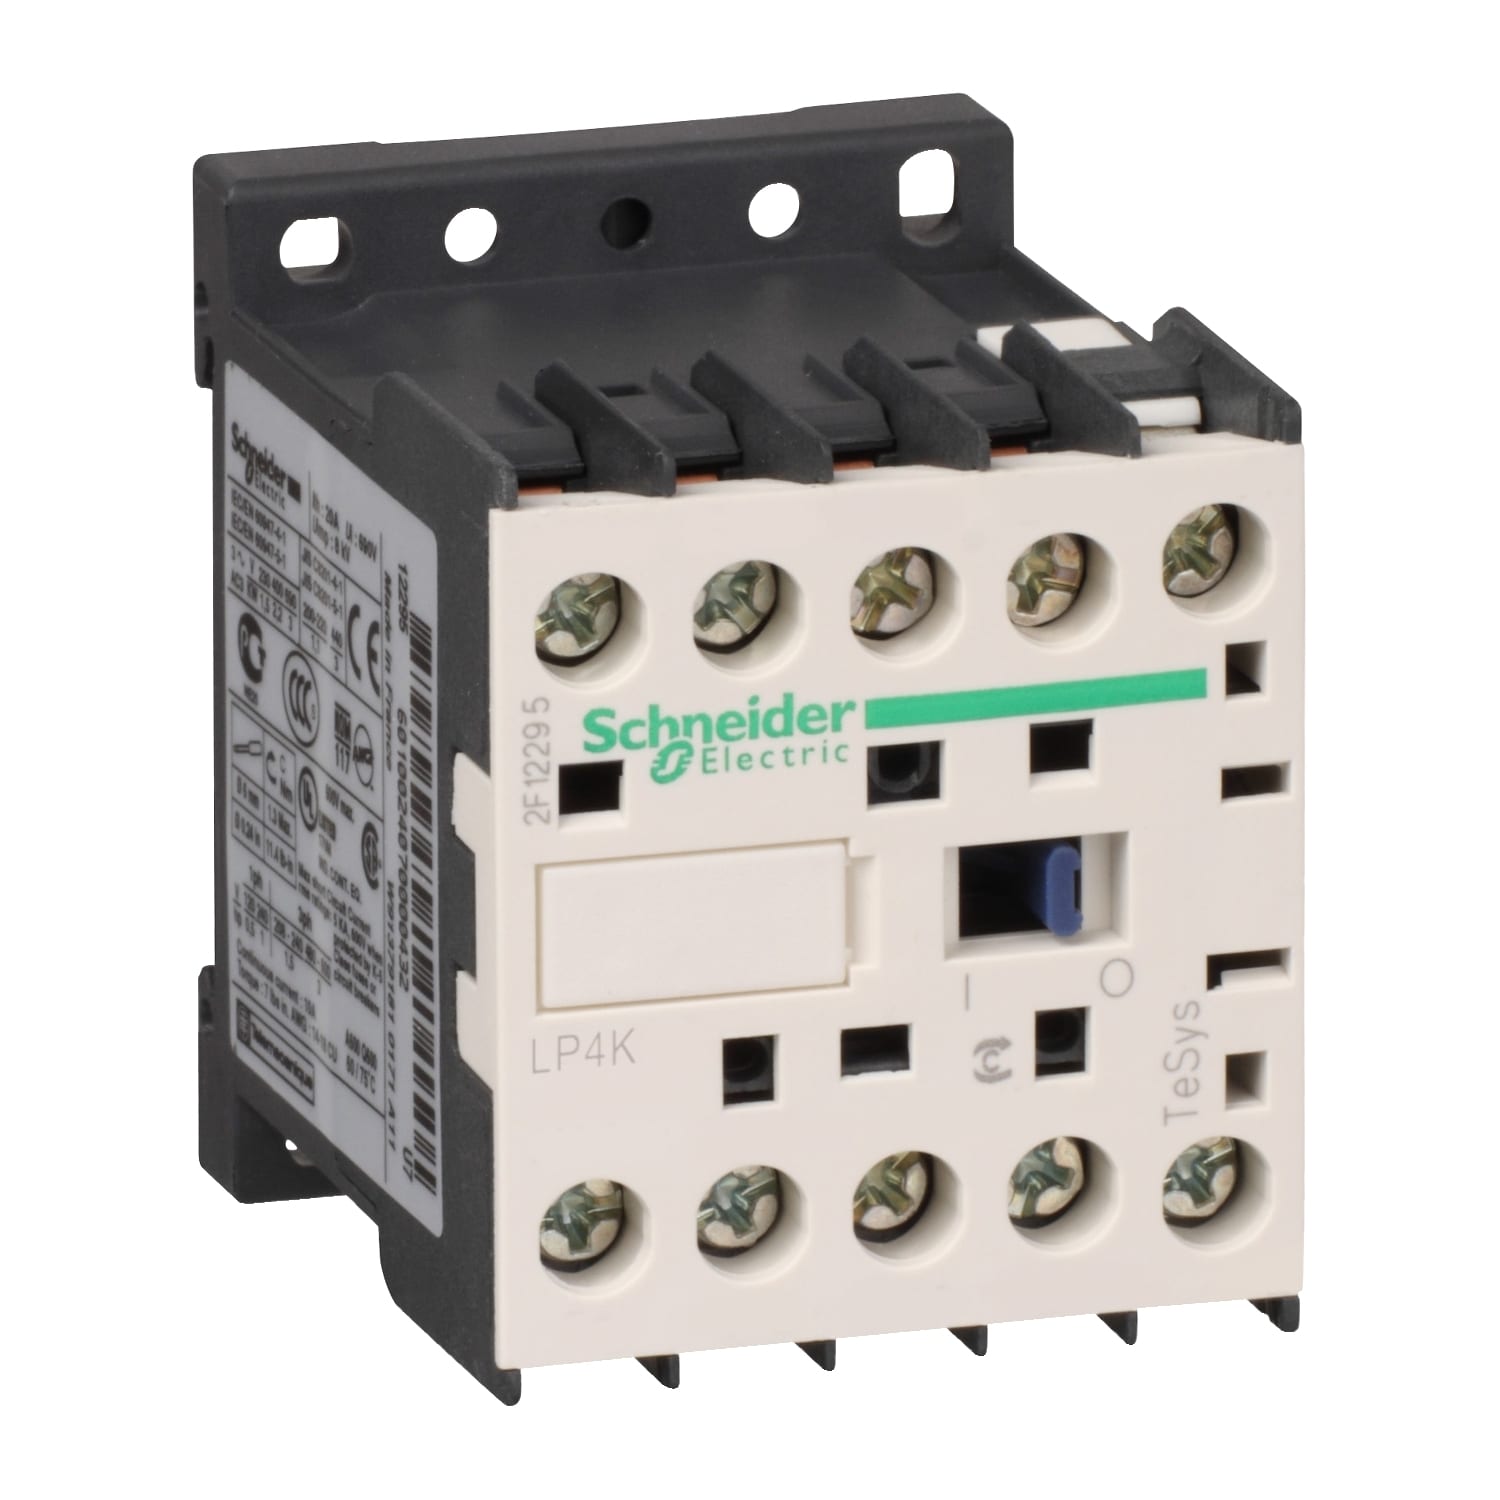 Schneider Electric - TeSys LP4K - contacteur - 4P - AC-1 440V - 20A - bobine 24Vcc